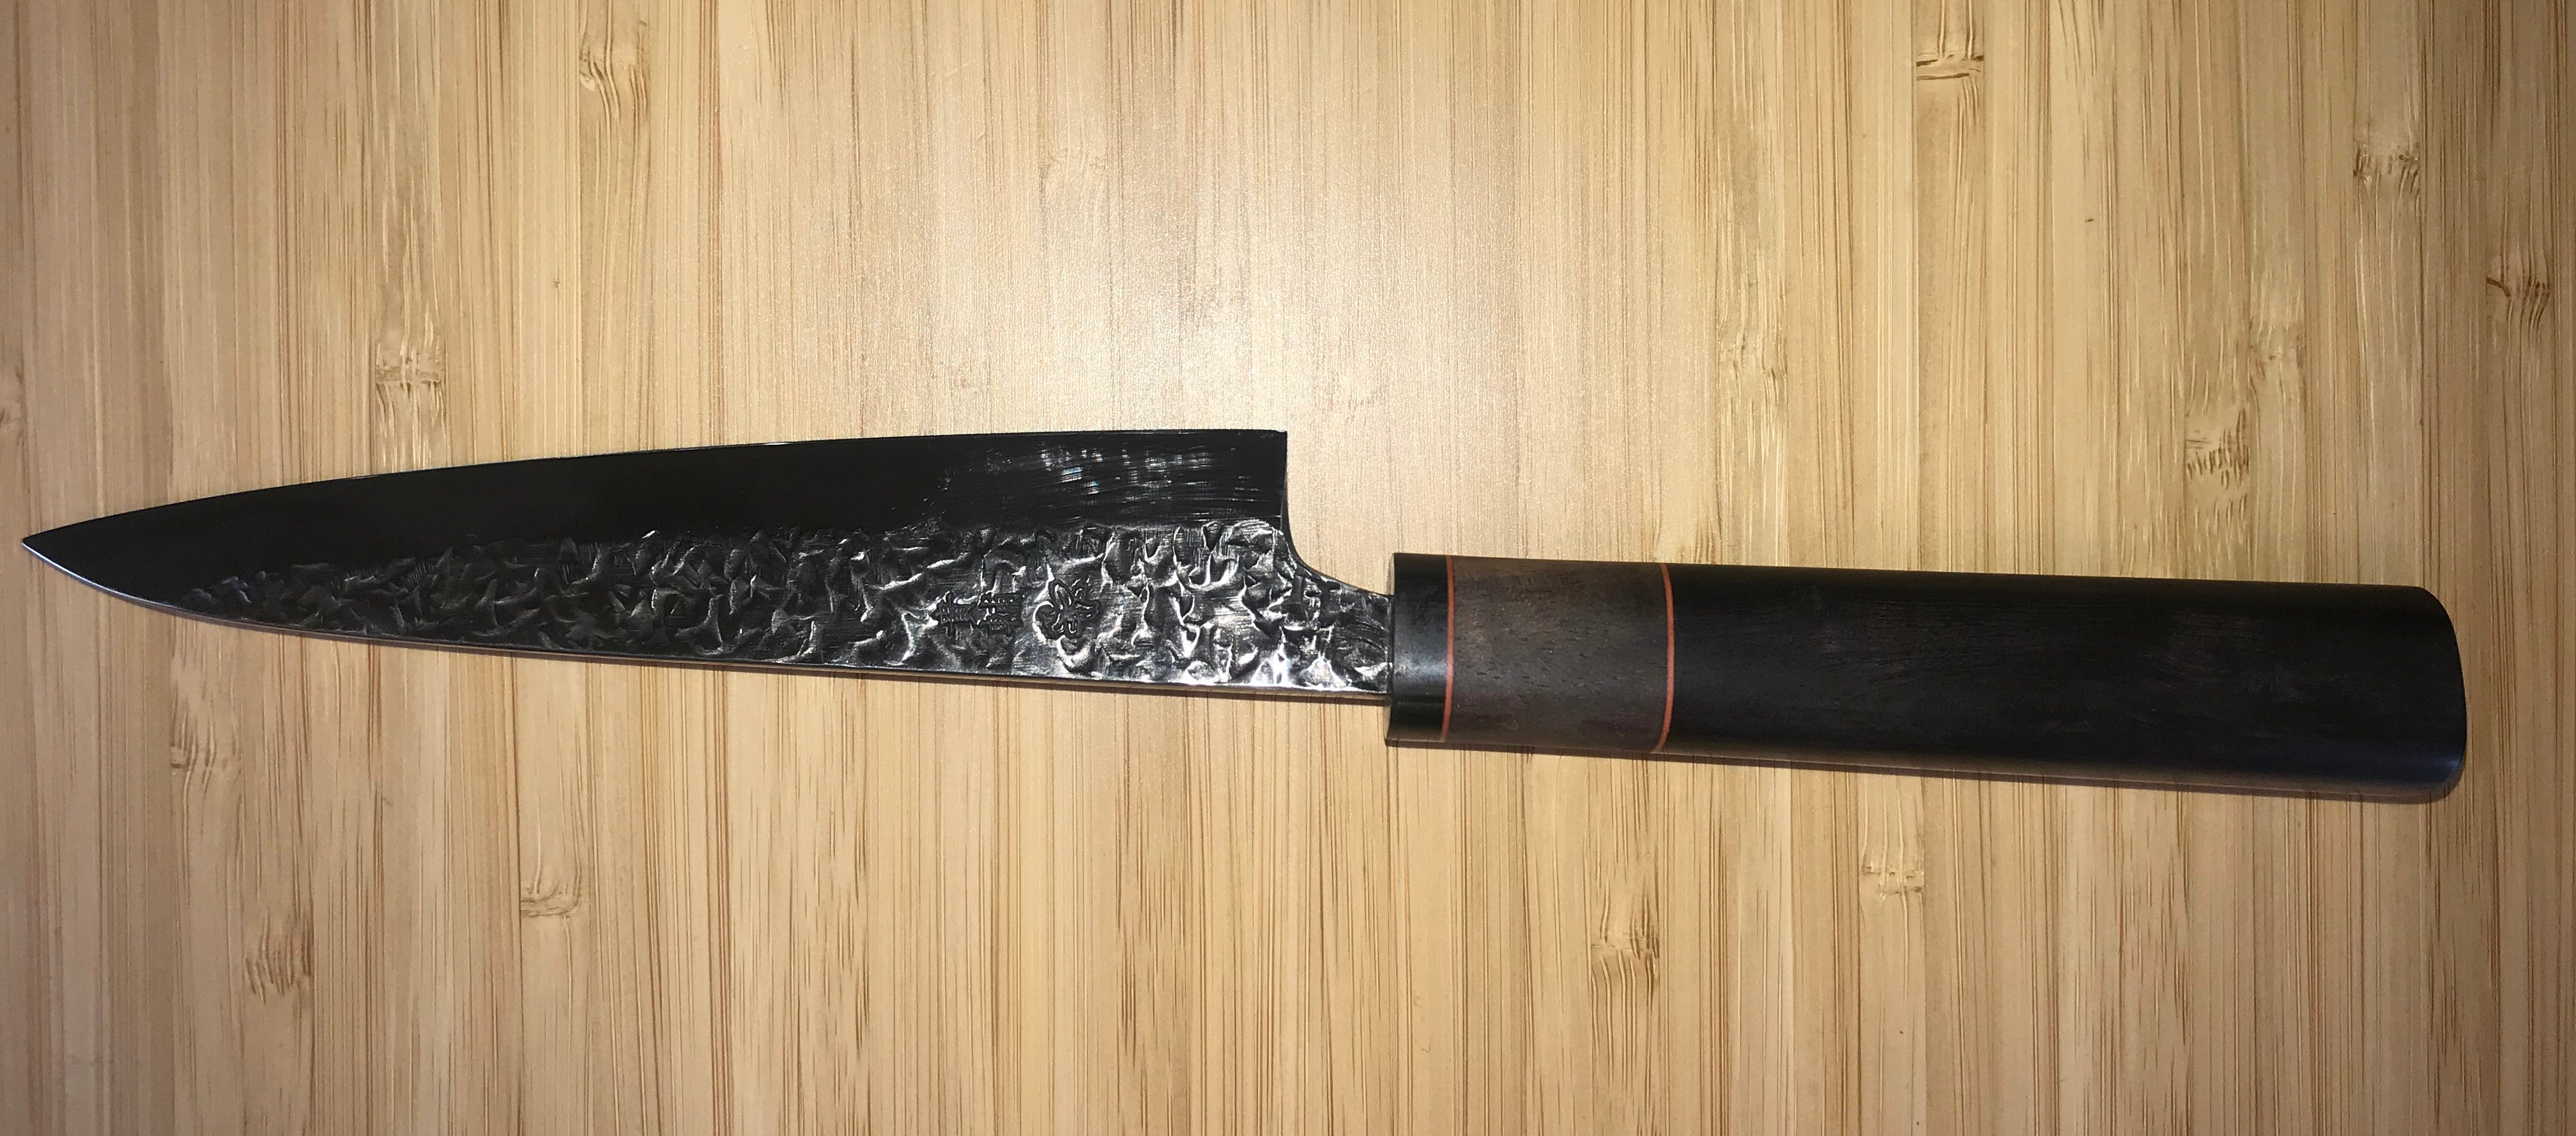 ATS-34 knife